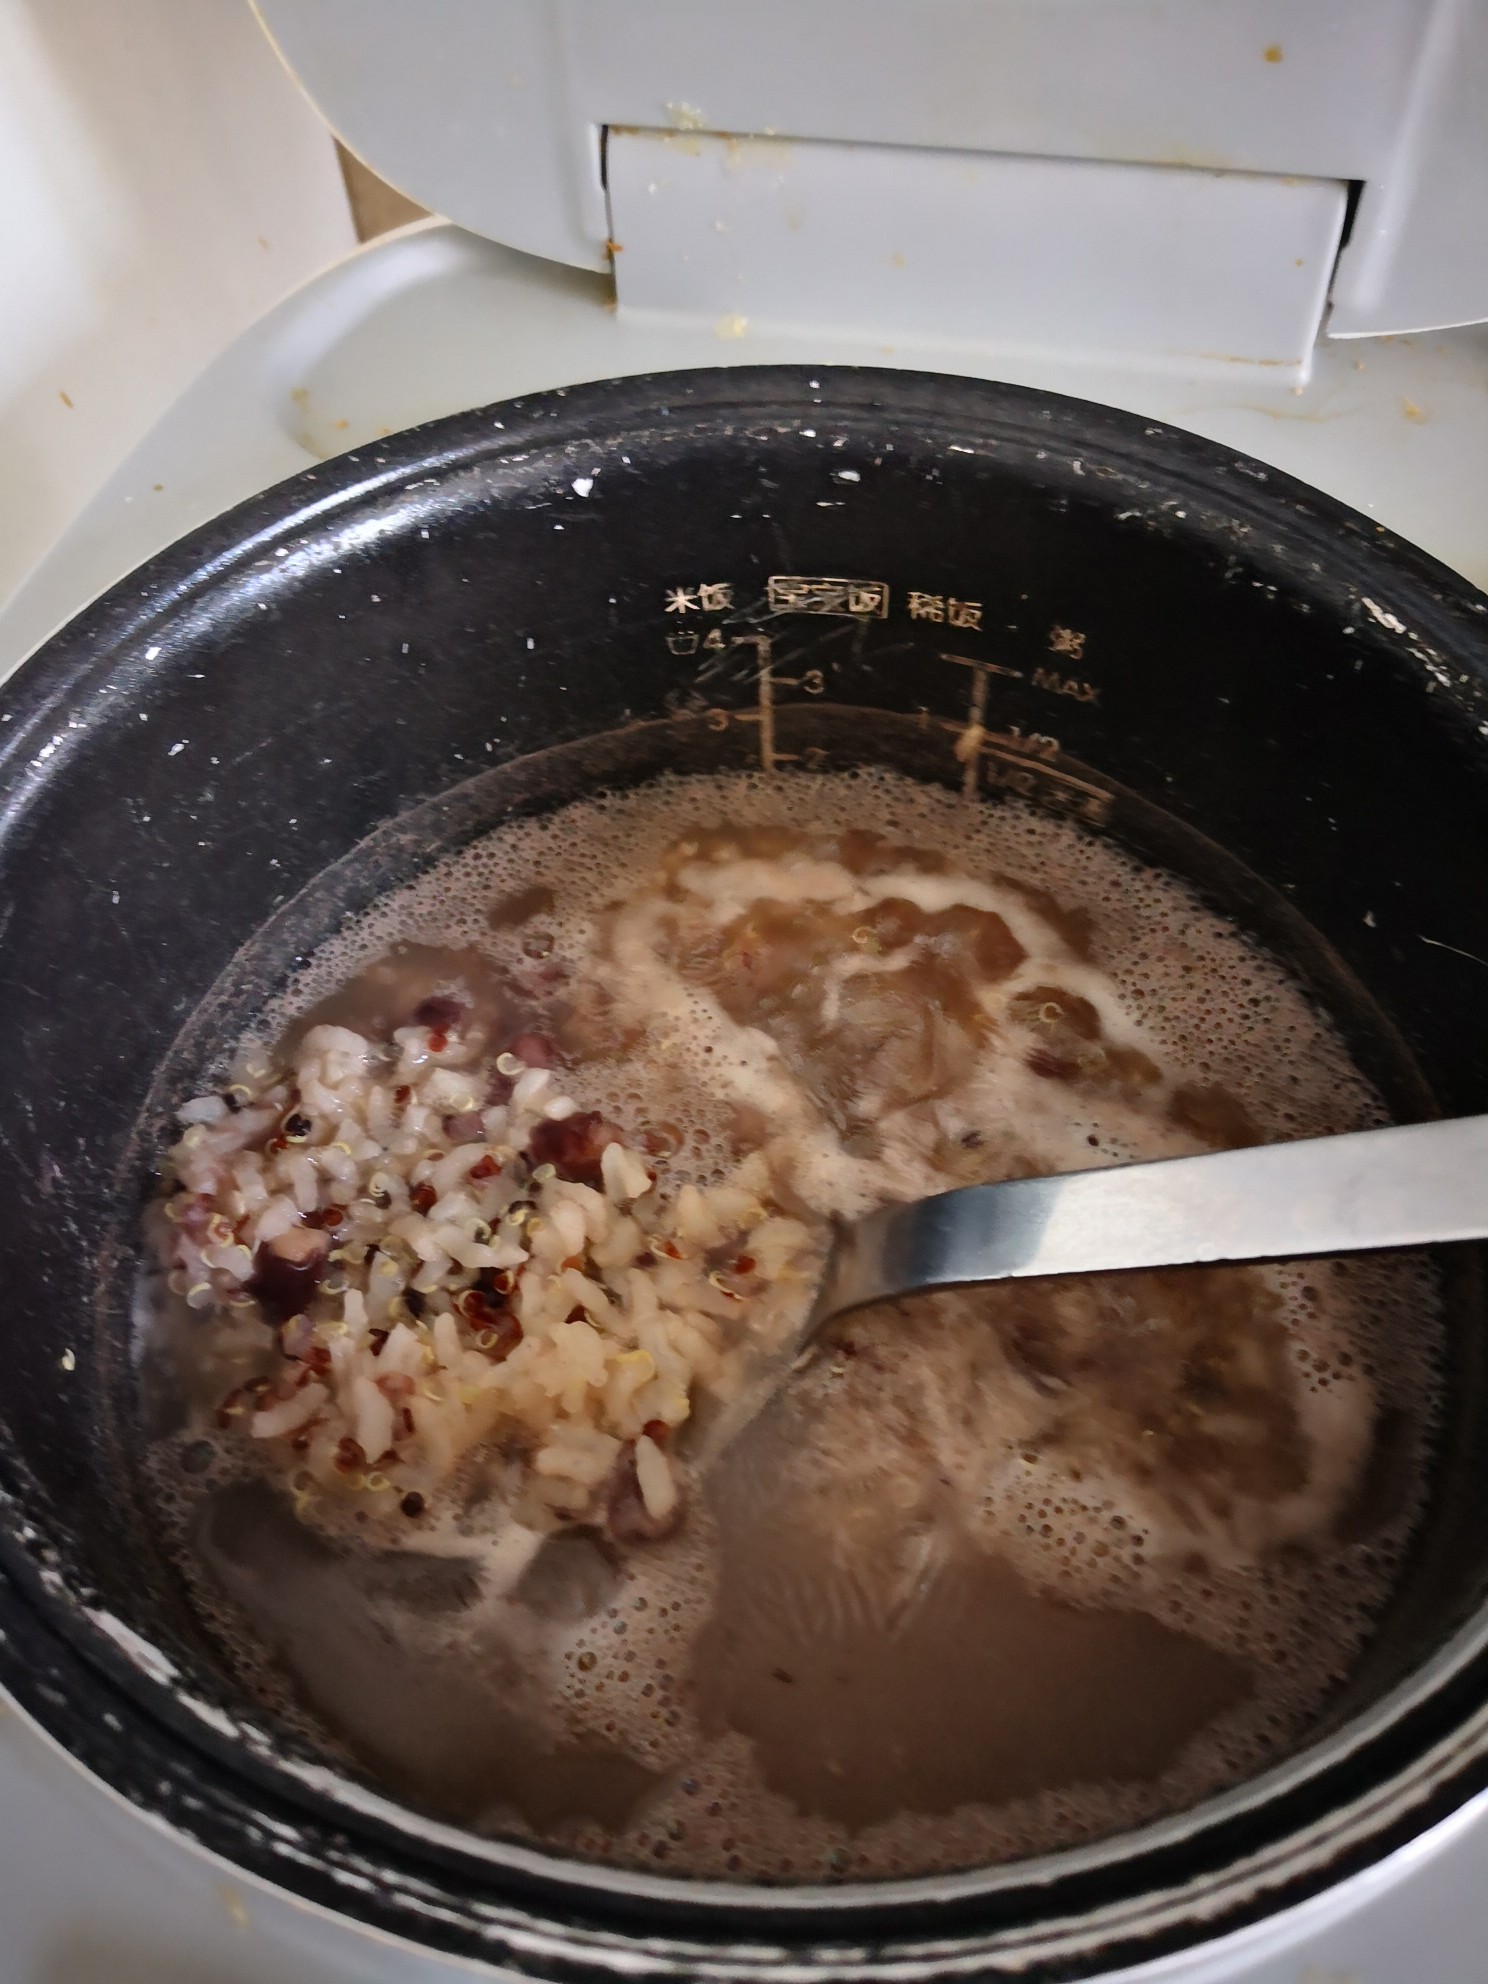 Red Bean Quinoa Porridge recipe